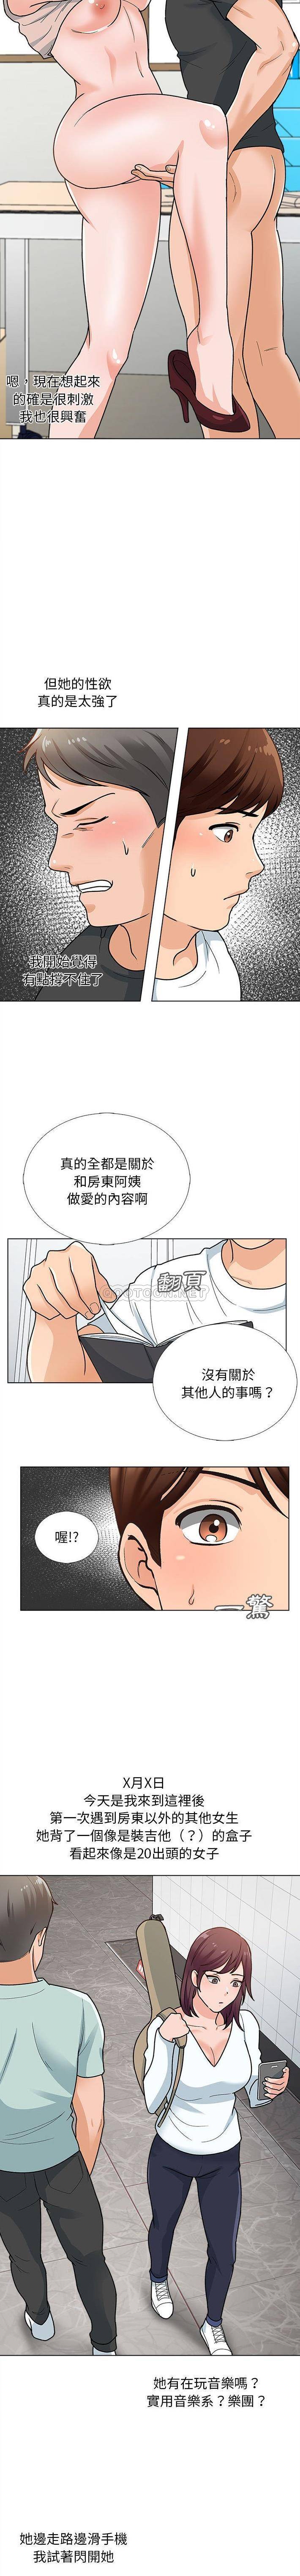 韩国污漫画 幸福公寓 第12话 11